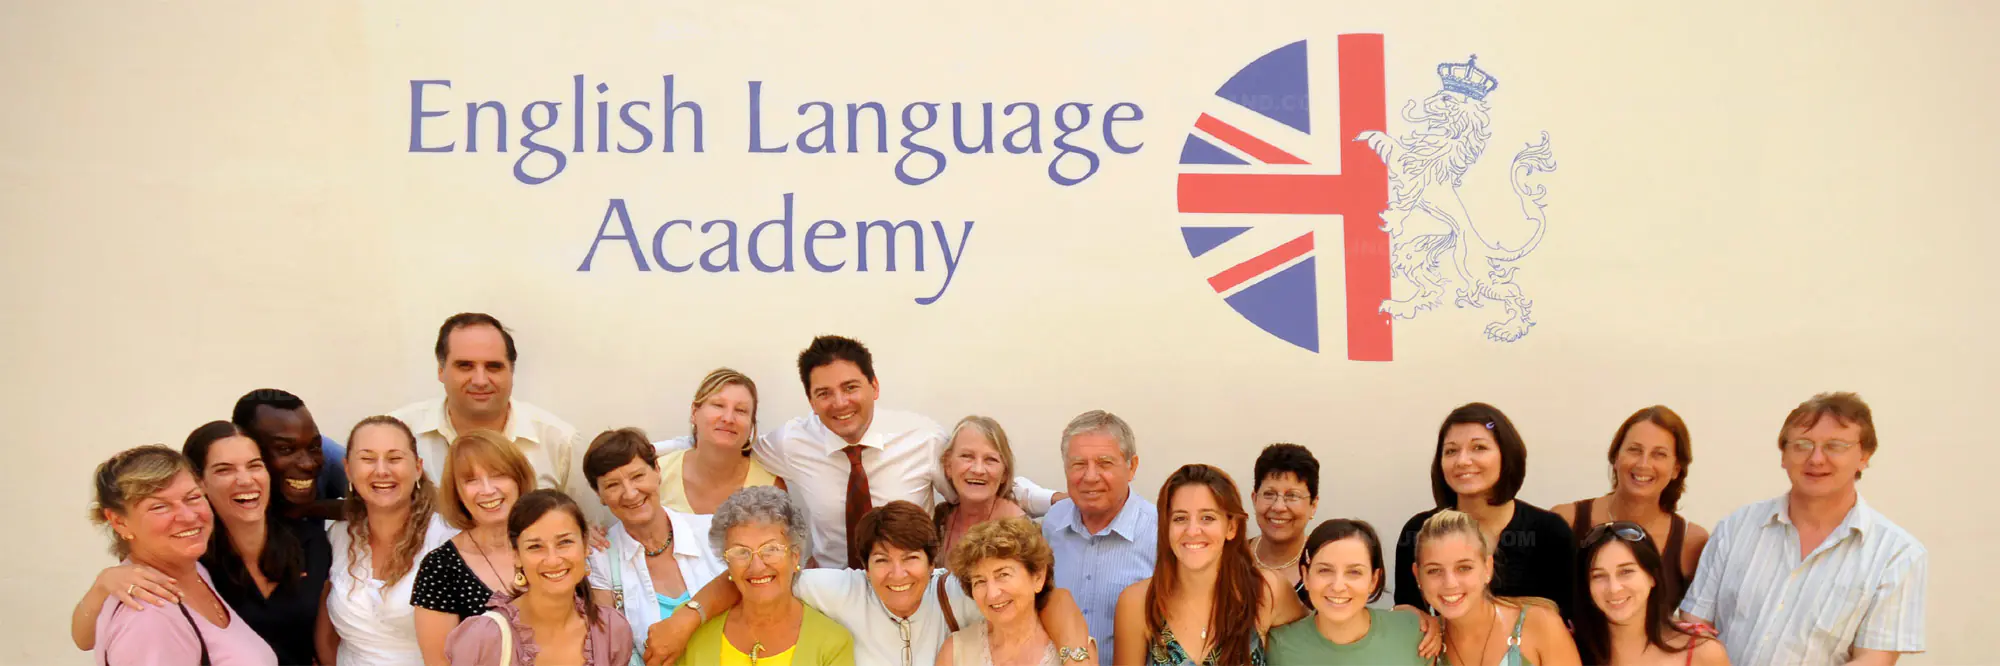 Los alojamientos de English Language Academy